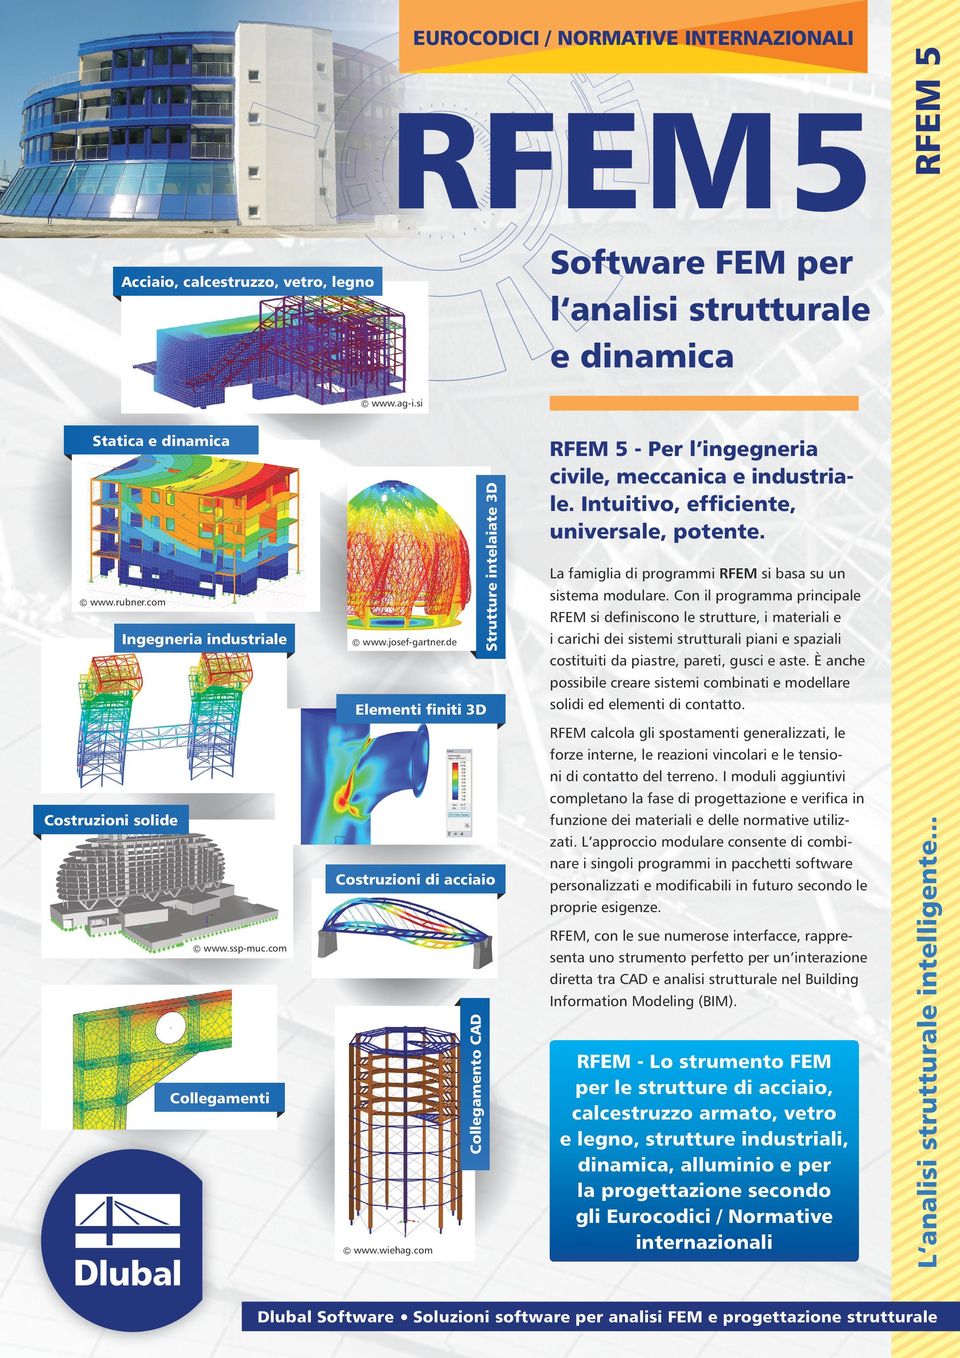 La famiglia di programmi RFEM si basa su un sistema modulare.